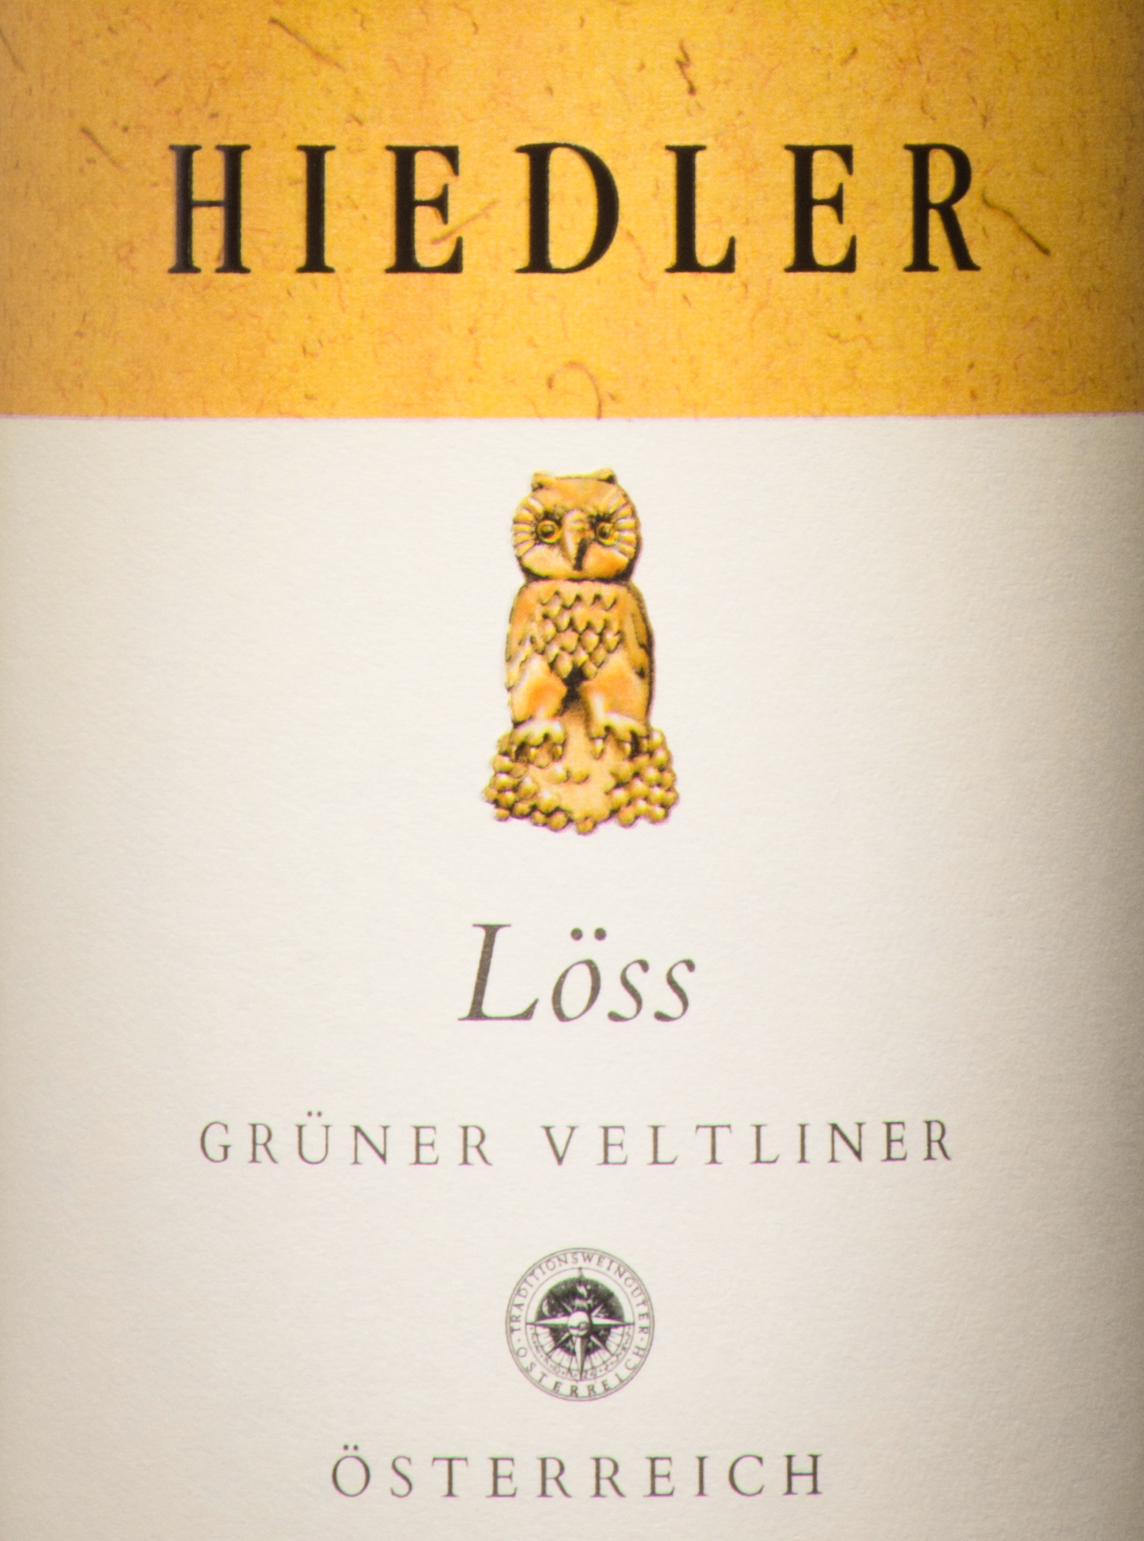 & Veltliner Skurnik Wines Kamptal DAC L. \'Loess\' Hiedler Grüner Spirits -